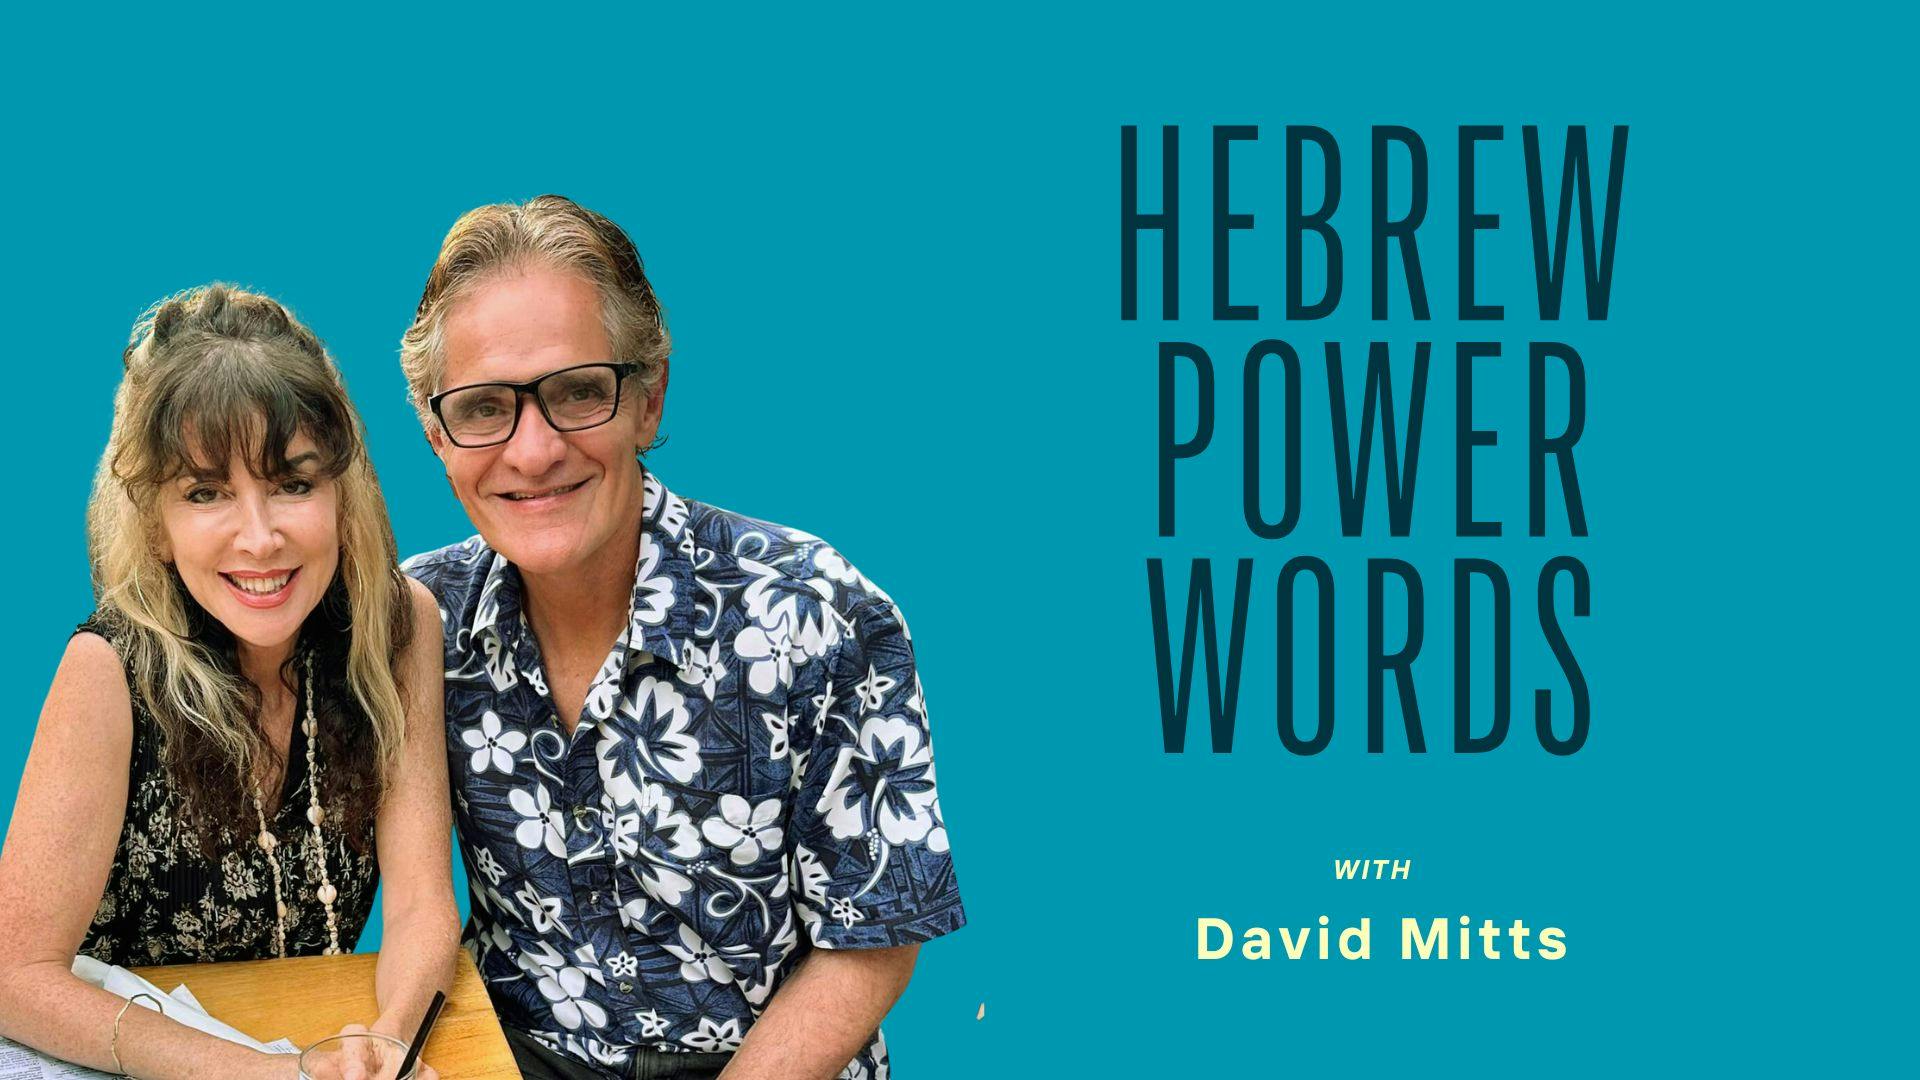 hebrewpowerwords